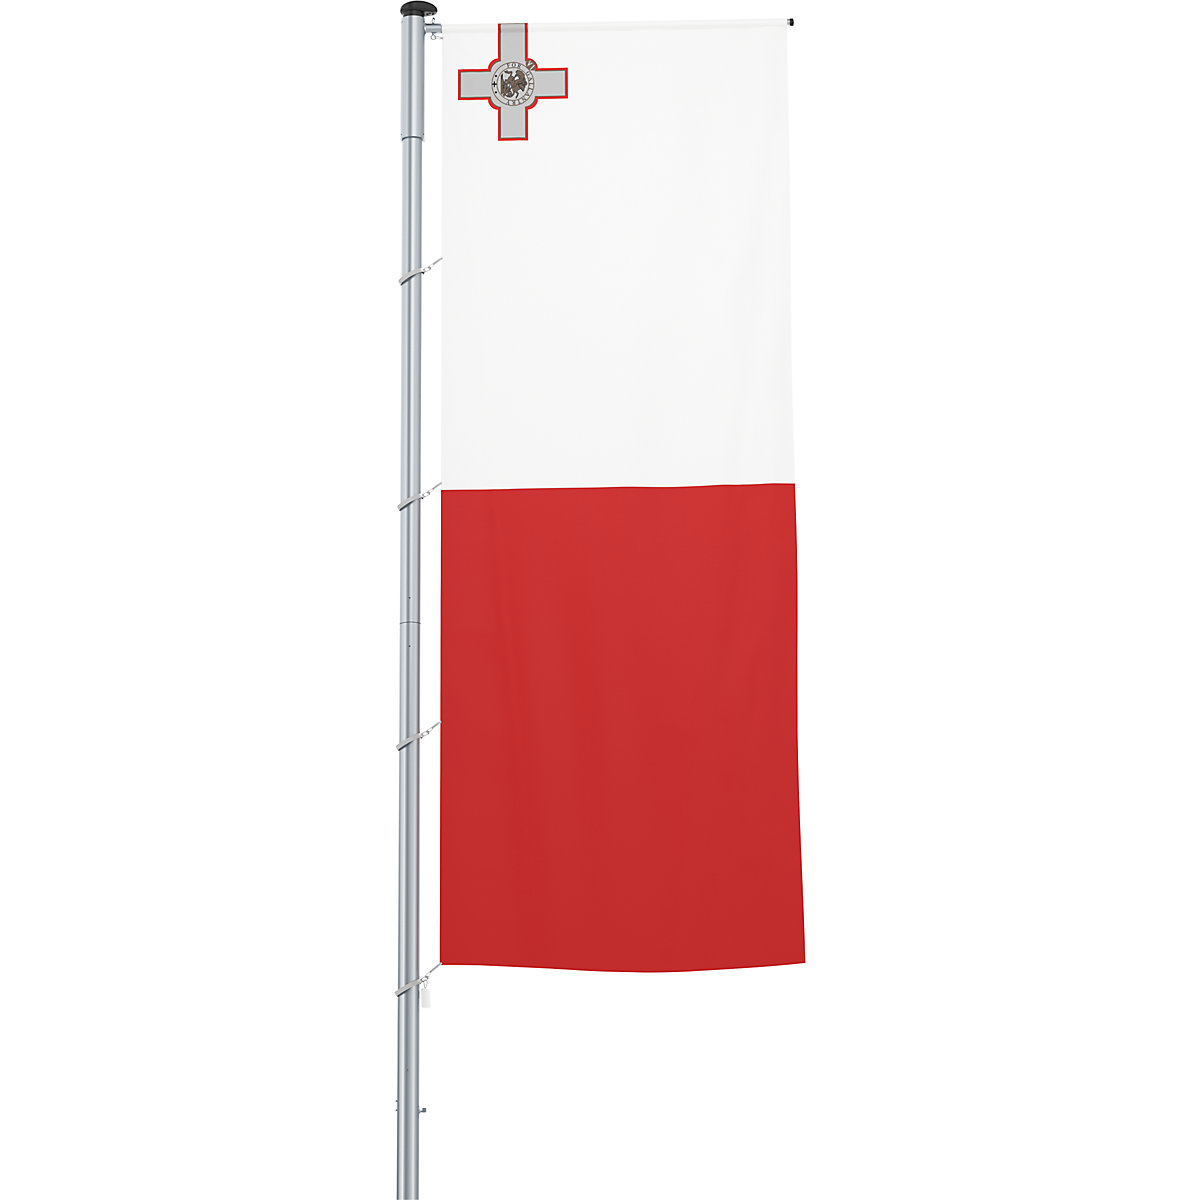 Gémes zászló/országzászló – Mannus, méret 1,2 x 3 m, Málta-10